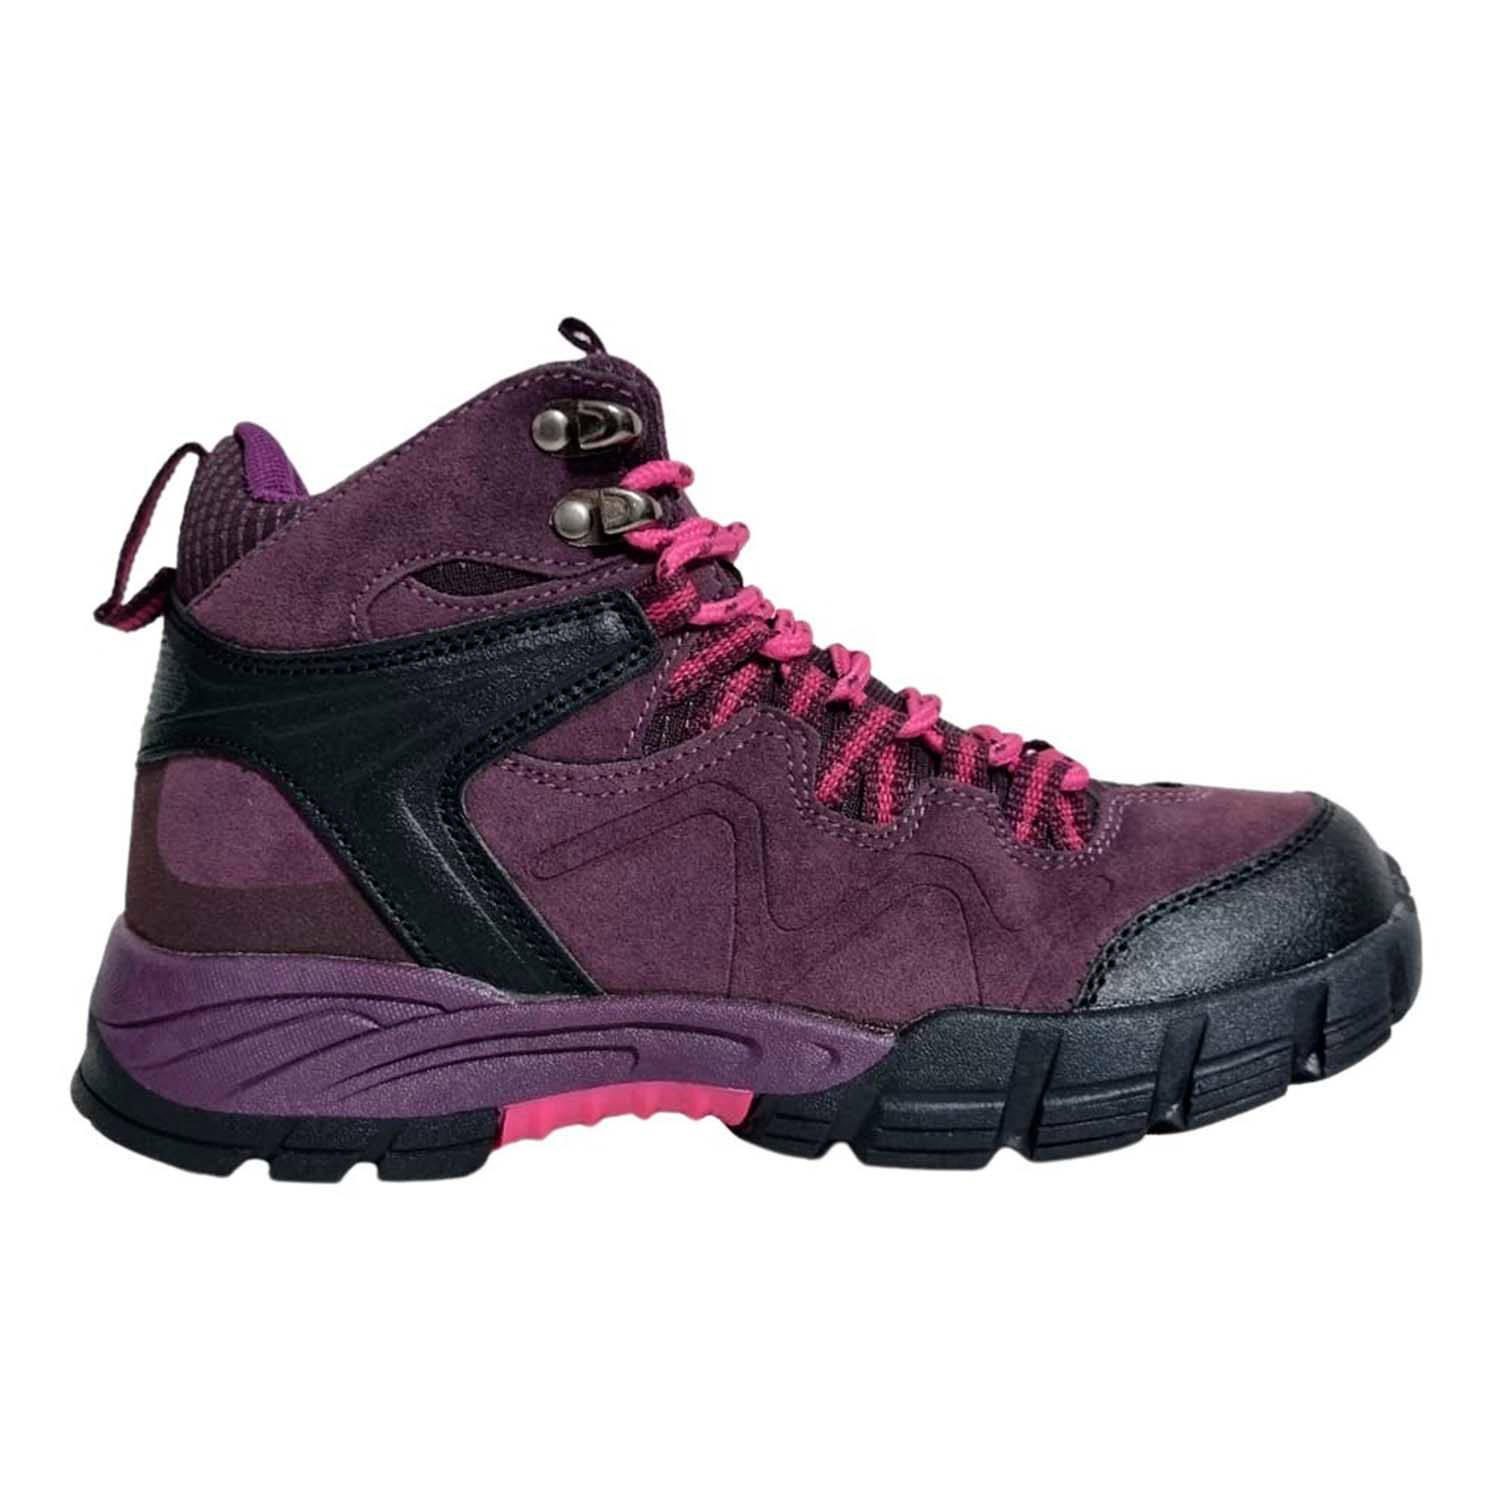 Zapatos para mujer calzado de senderismo trekking para mujeres-Violeta.  GENERICO